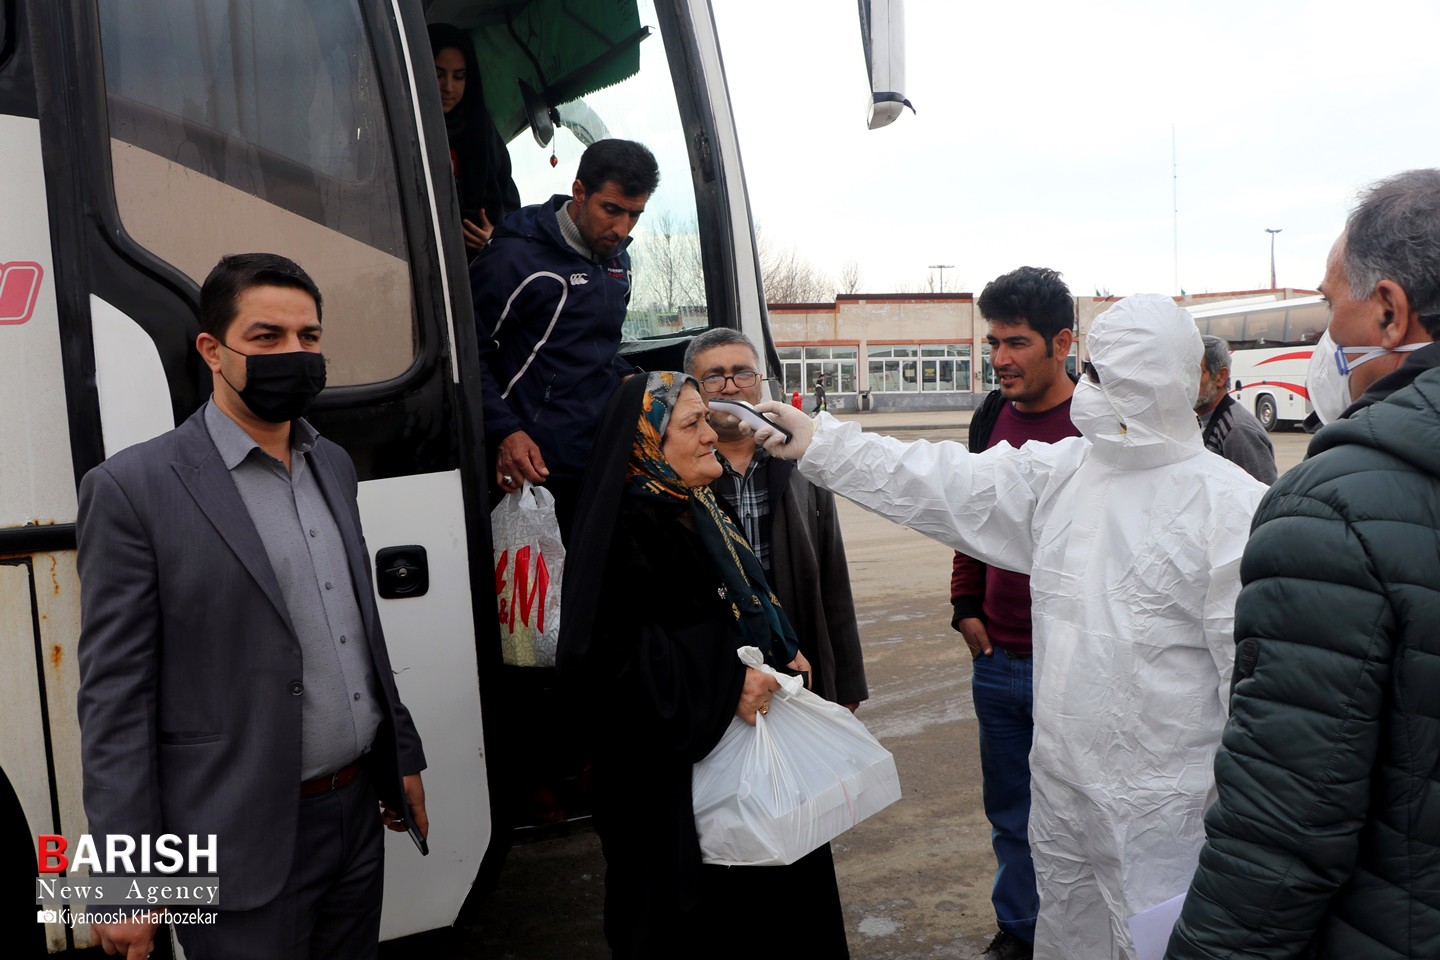 ضدعفونی حمل و نقل برون شهری و تب سنجی مسافران در ترمینال ارومیه